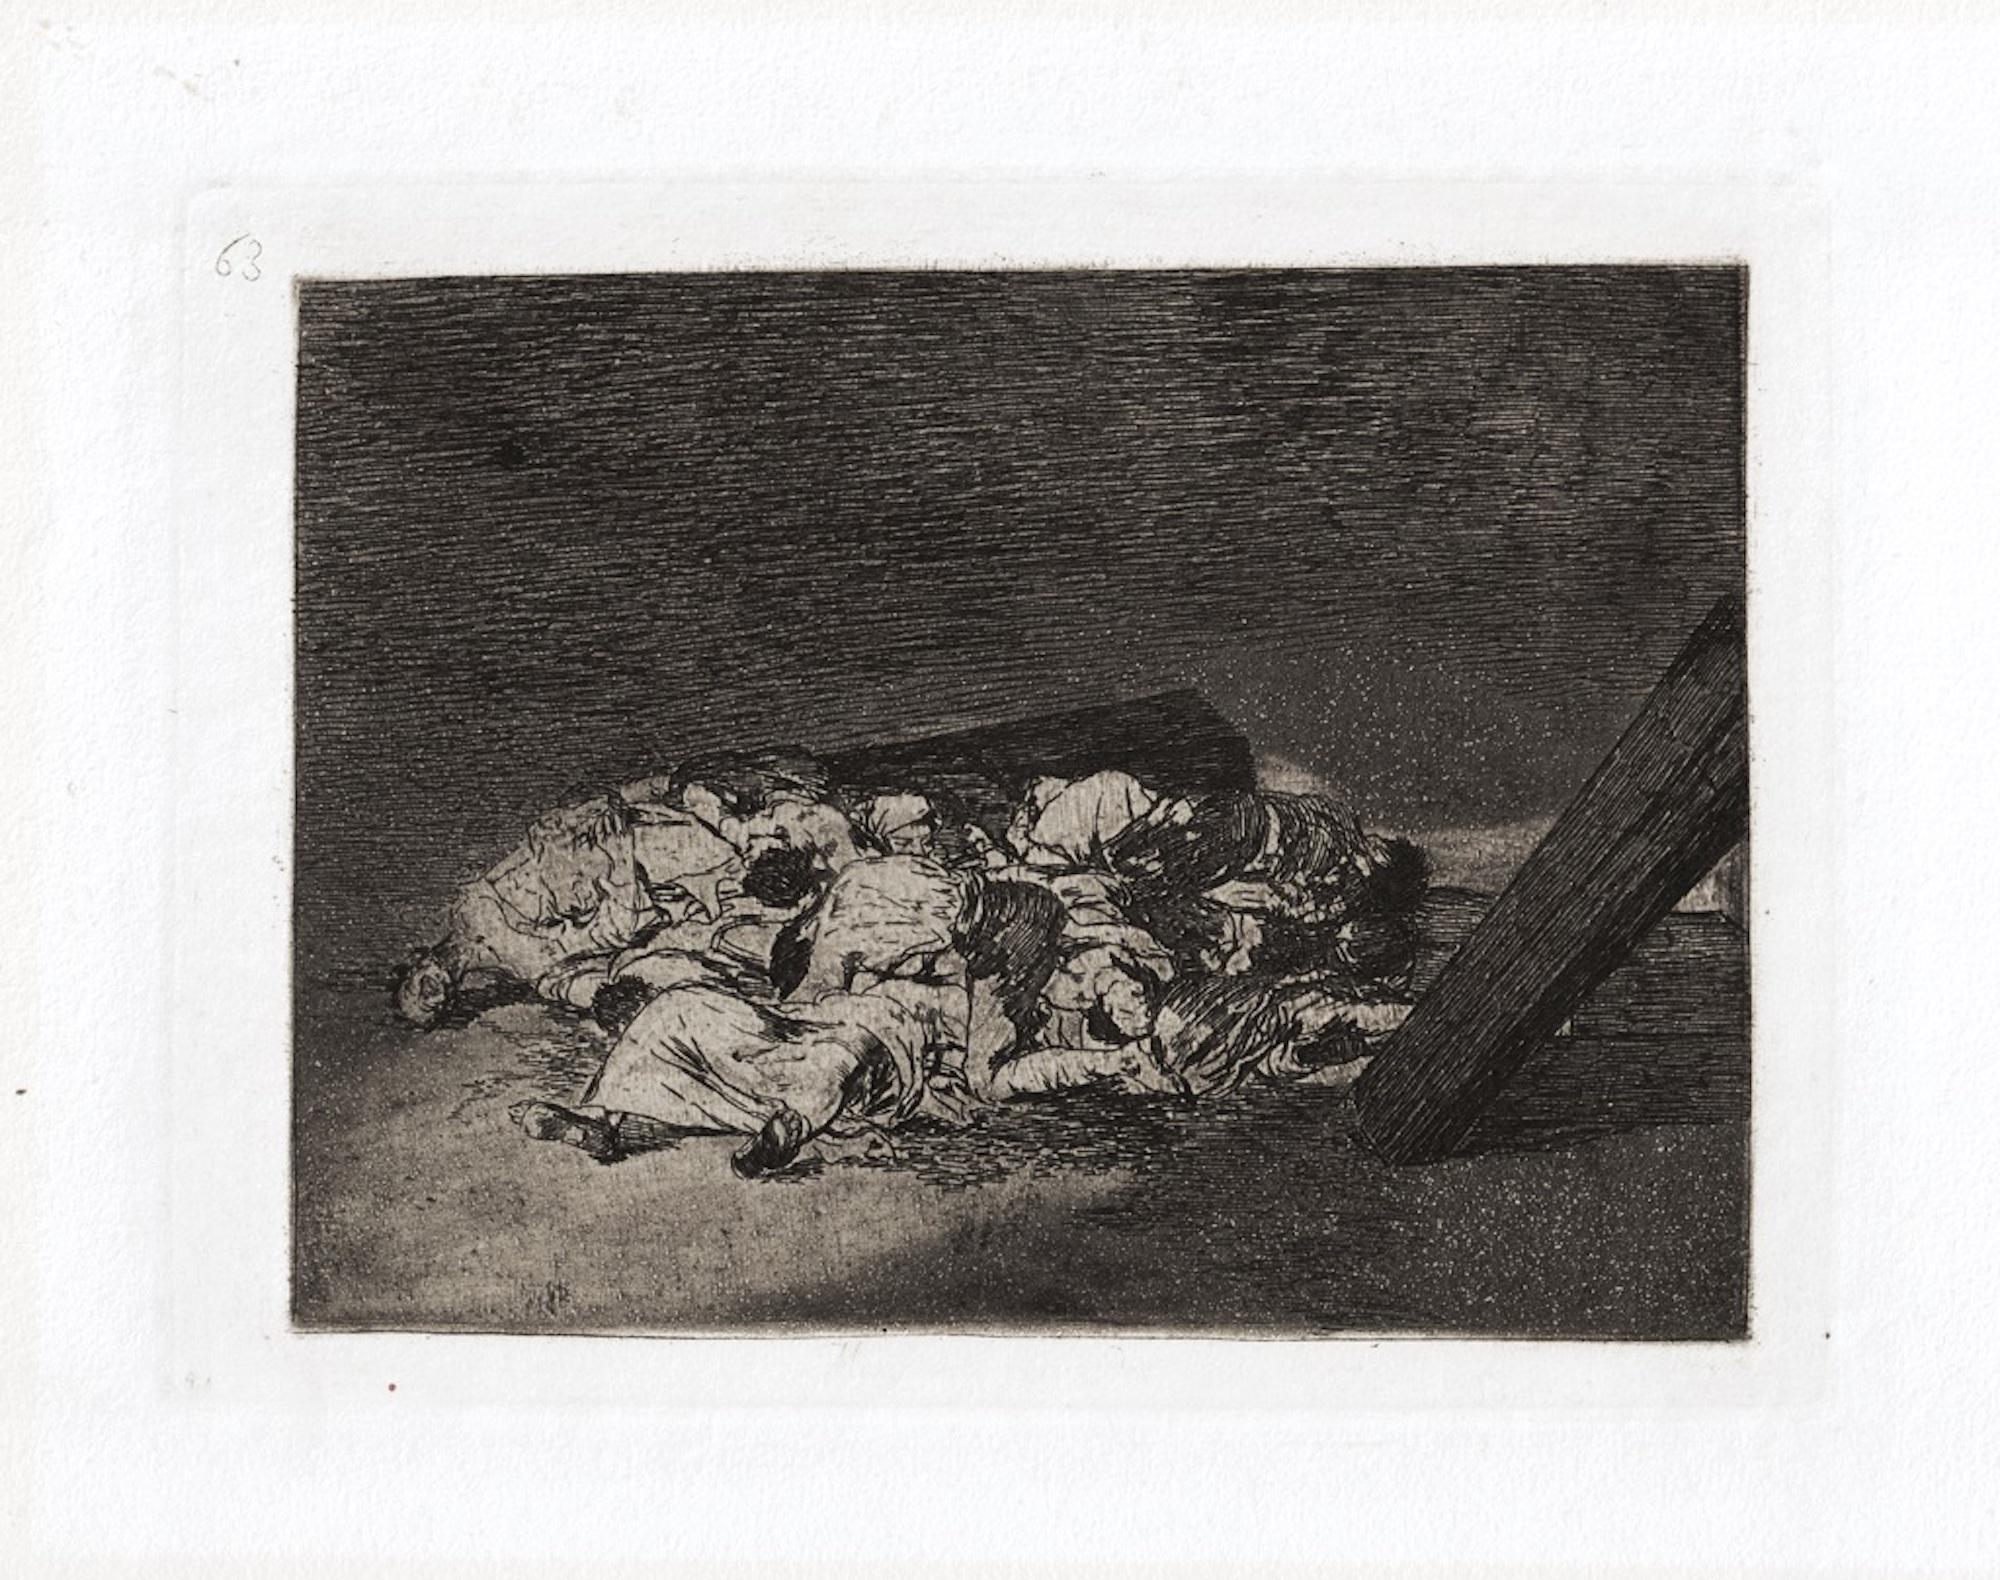 Muertos recogidos est une œuvre d'art originale réalisée par le grand artiste espagnol Francisco Goya en 1810. 

Gravure originale sur papier. 

L'œuvre appartient à la célèbre série "Los Desastres de la Guerra" réalisée pendant les années de la